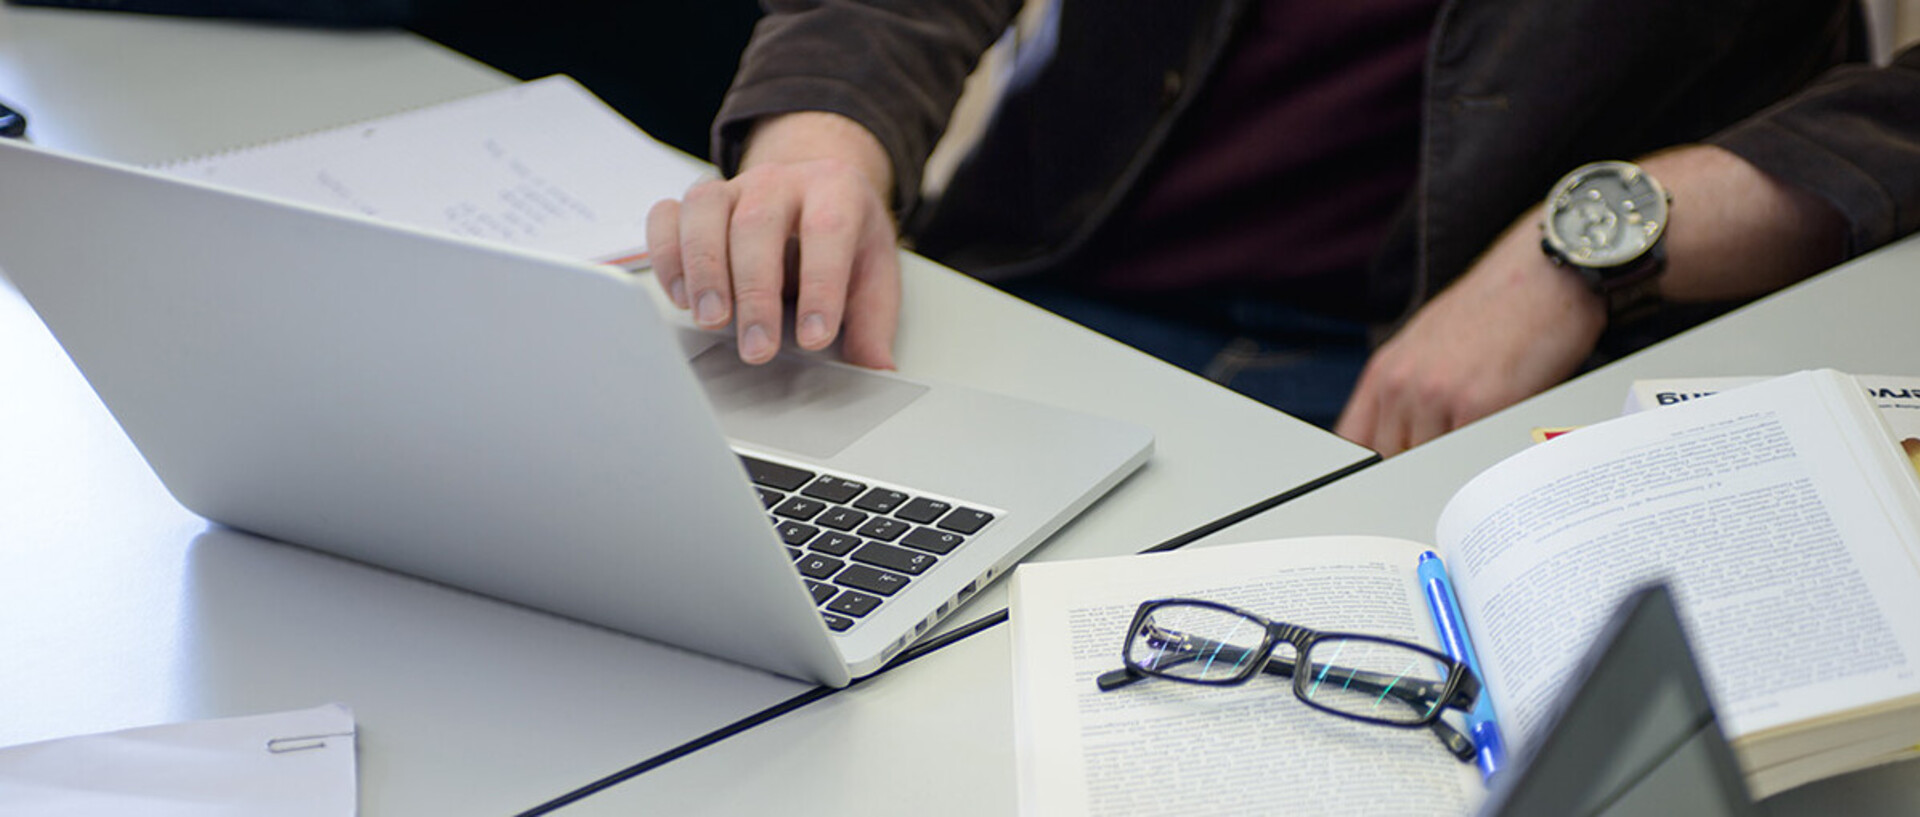 Ein offener Laptop mit einer Hand, die an der Tastatur arbeitet. Daneben ein aufgeschlagenes Buch mit Brille darauf